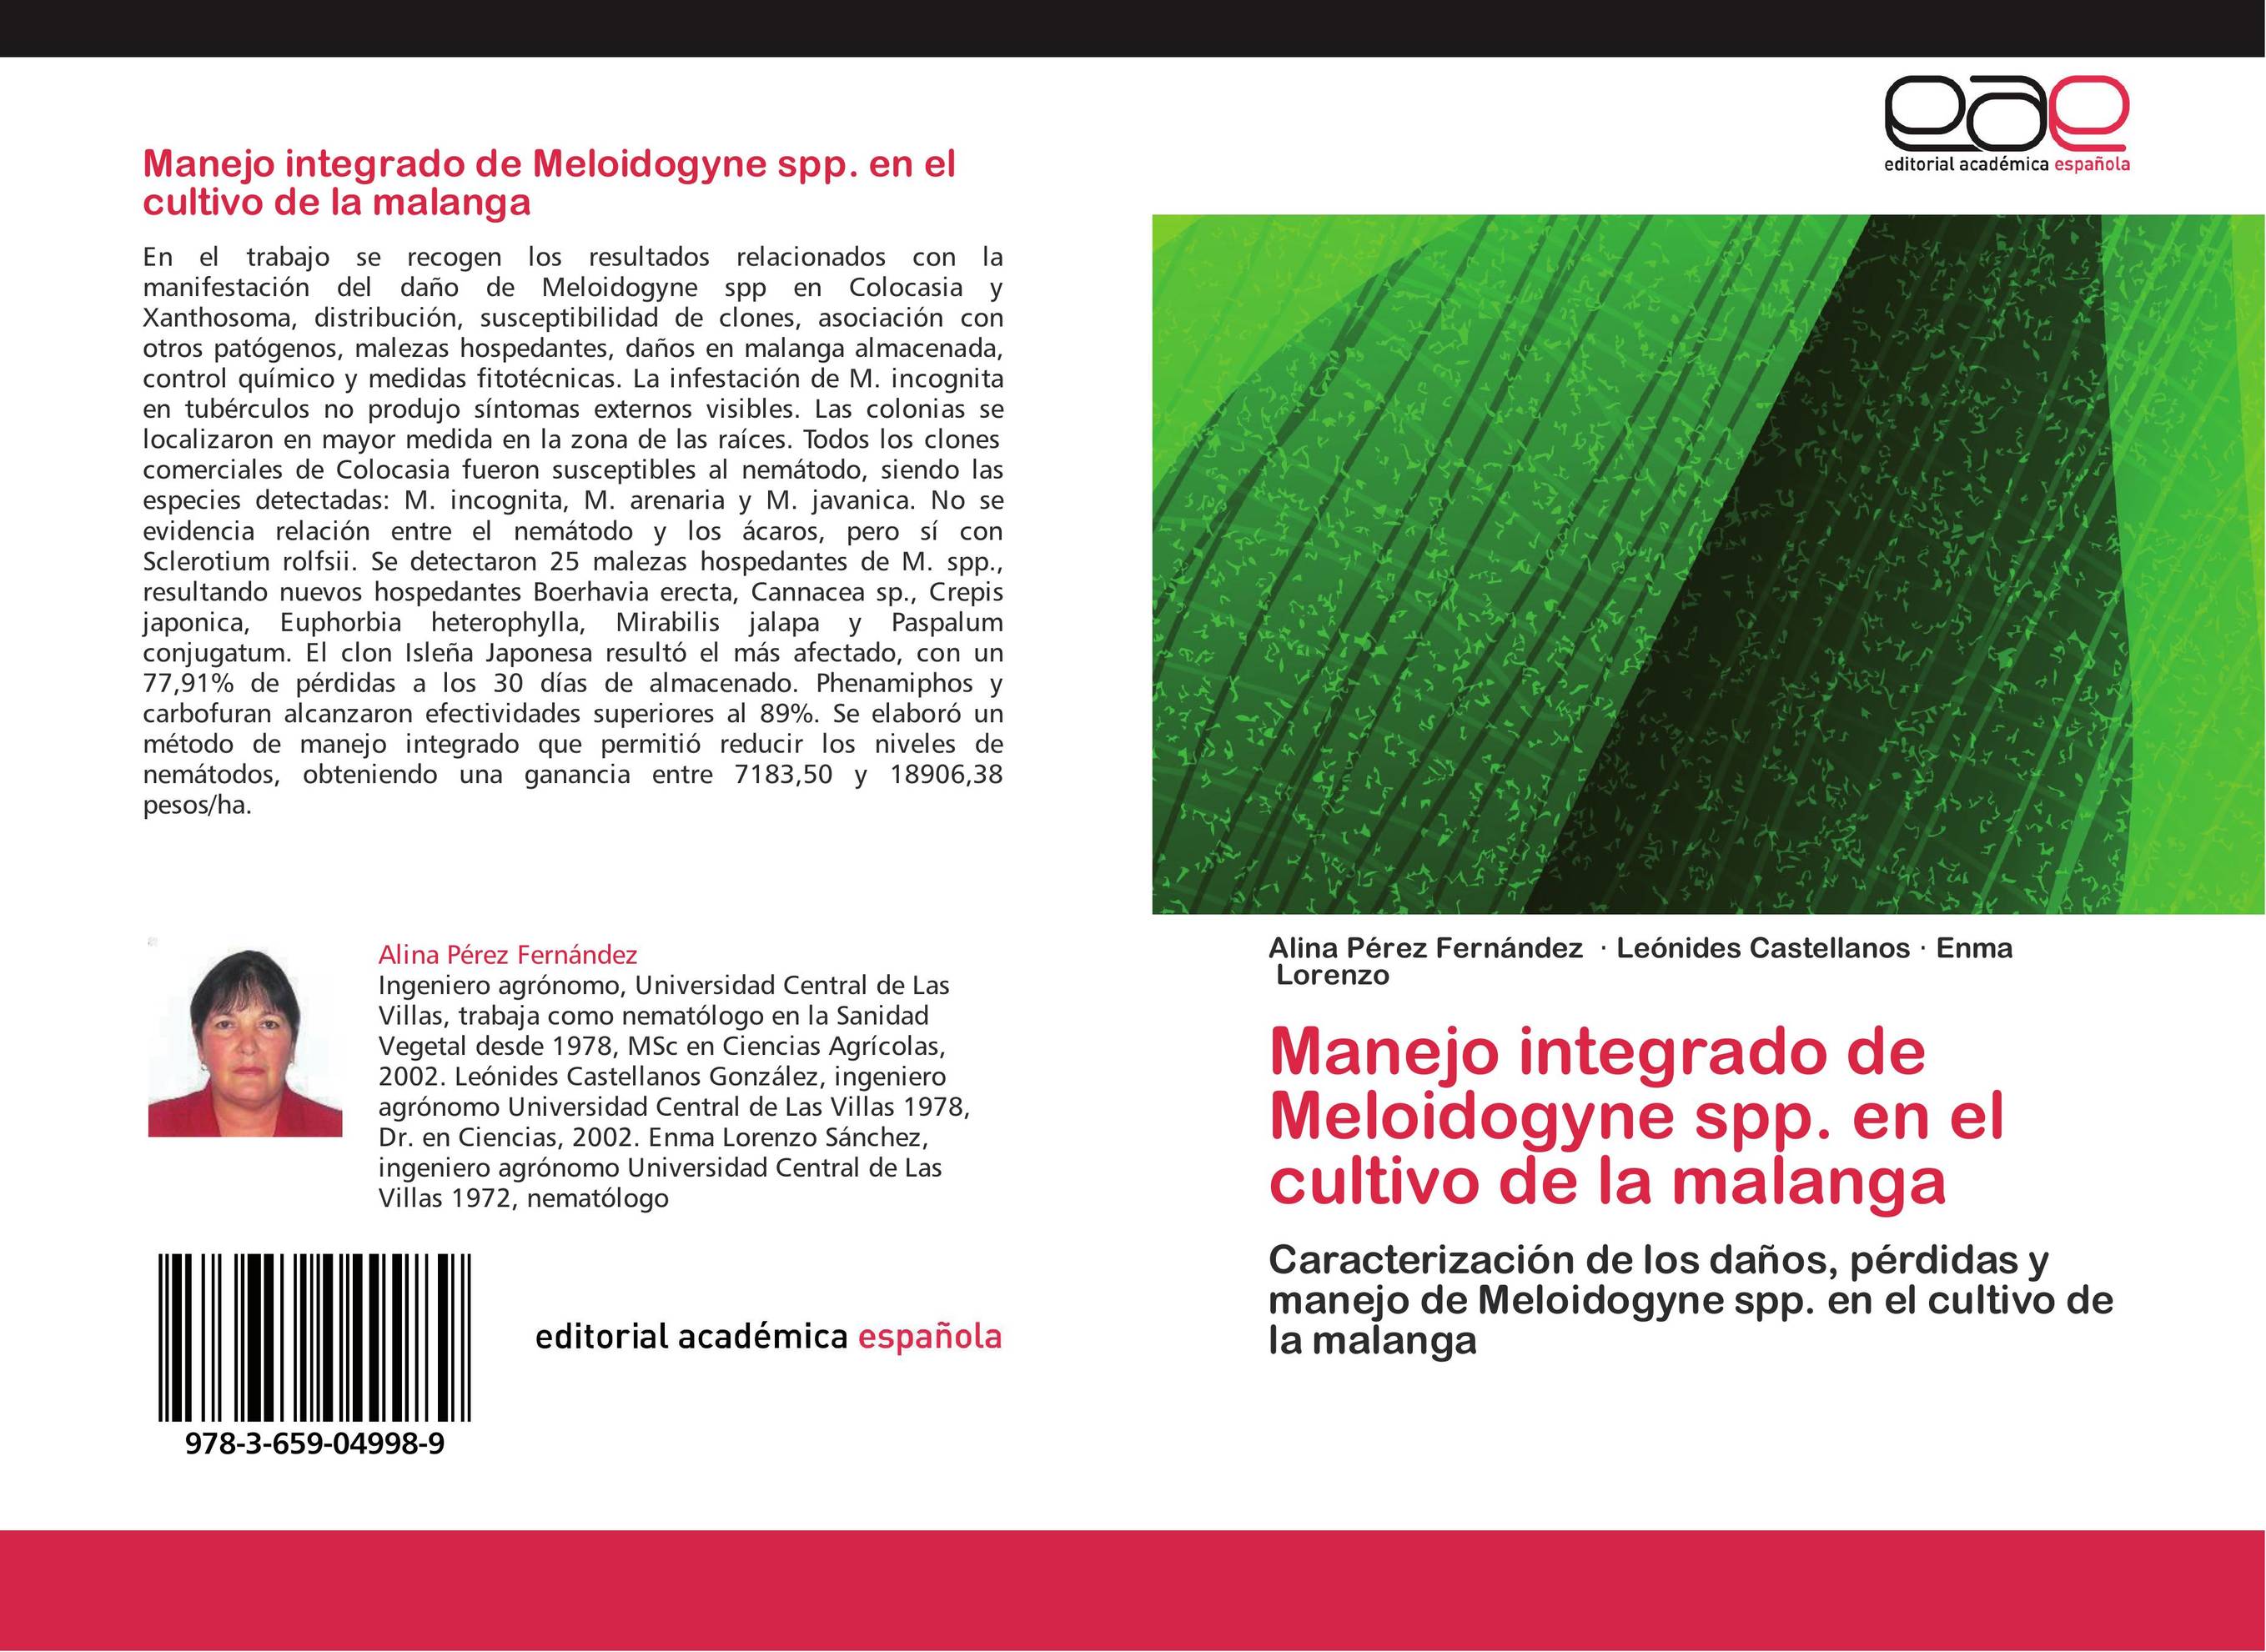 Manejo integrado de Meloidogyne spp. en el cultivo de la malanga